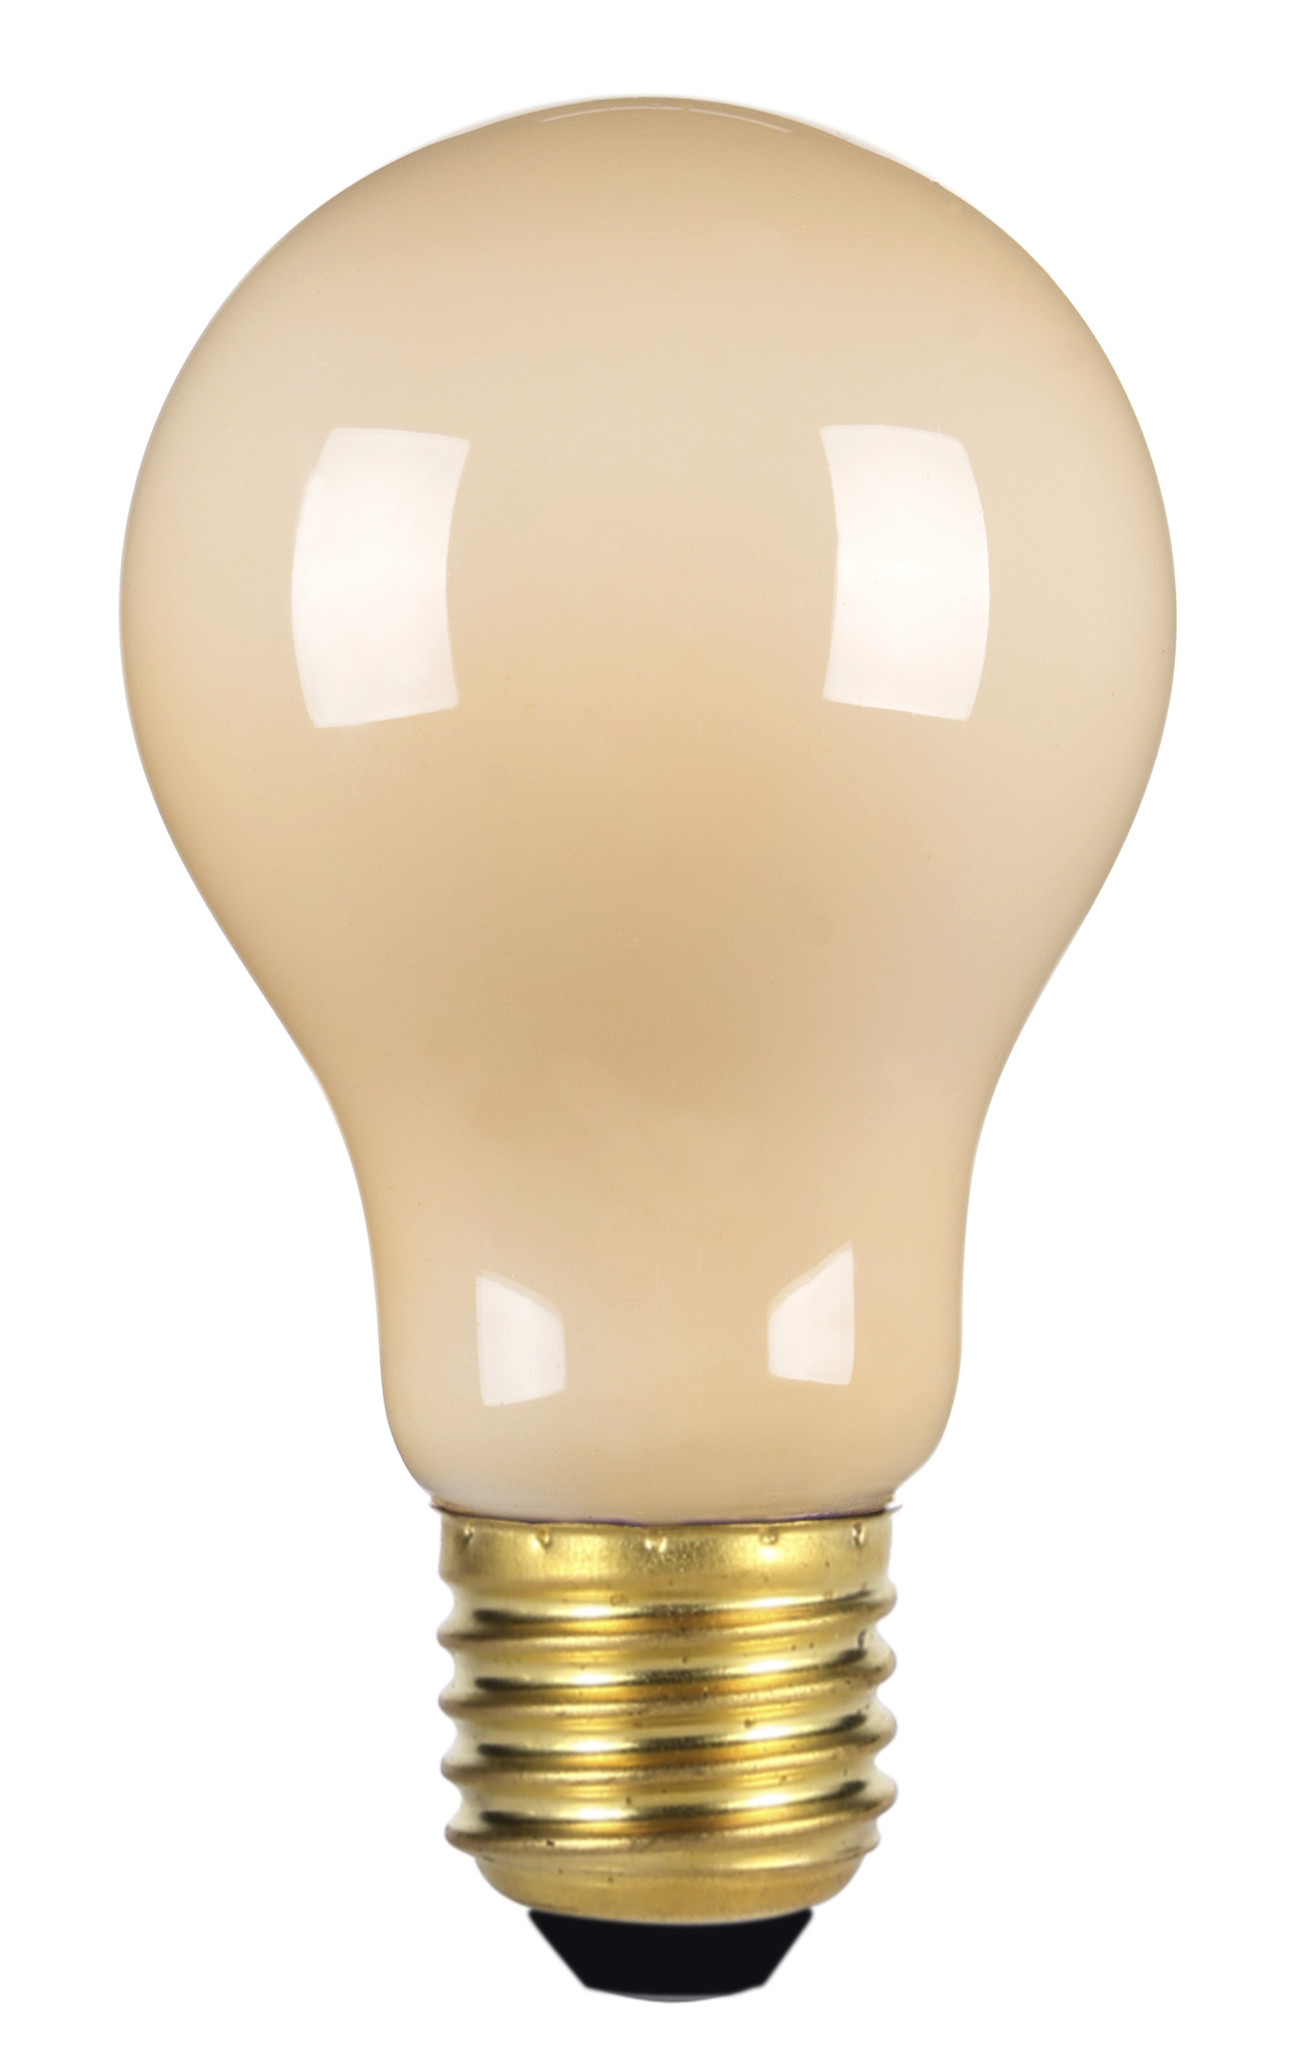 gans Groot Onderscheppen Standaard lamp Led flame met e27 fitting - Light Collection